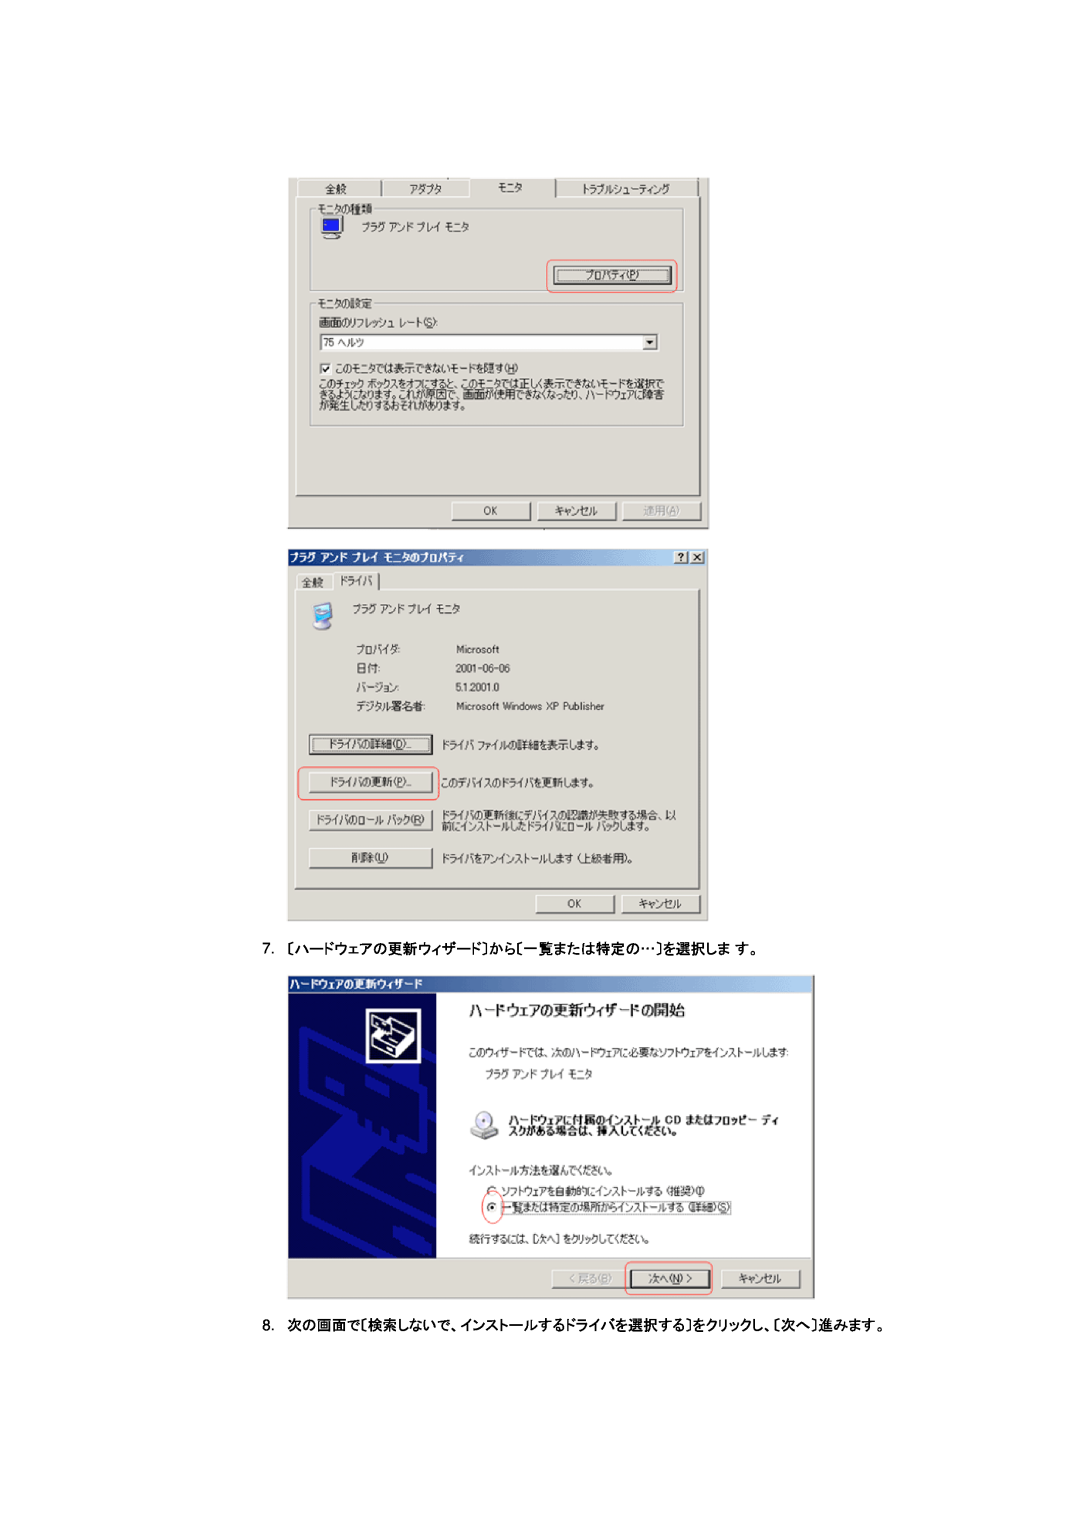 Samsung DI17PSQRV/XSJ manual 7. 〔ハードウェアの更新ウィザード〕から〔一覧または特定の…〕を選択しま す。, 8. 次の画面で〔検索しないで、インストールするドライバを選択する〕をクリックし、〔次へ〕進みます。 